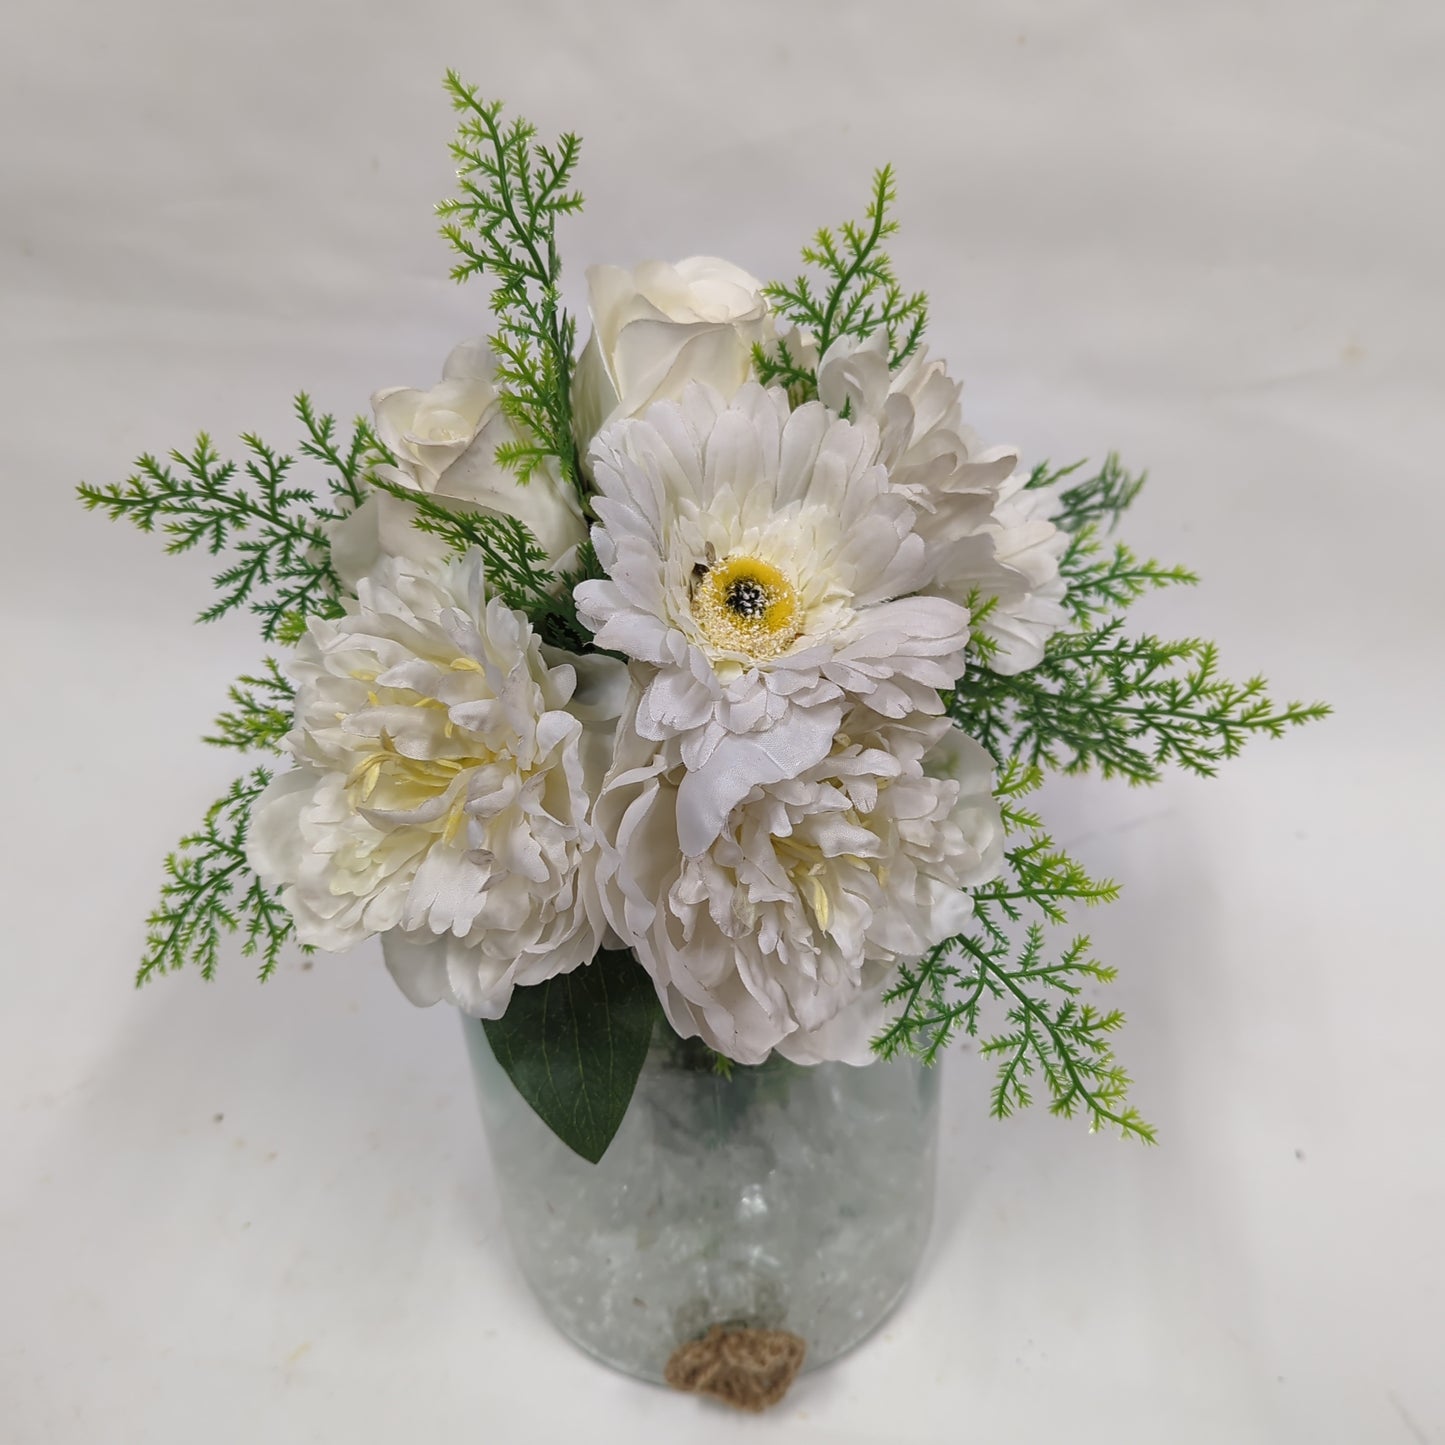 Faux Glass Vase | Wonderful Whites